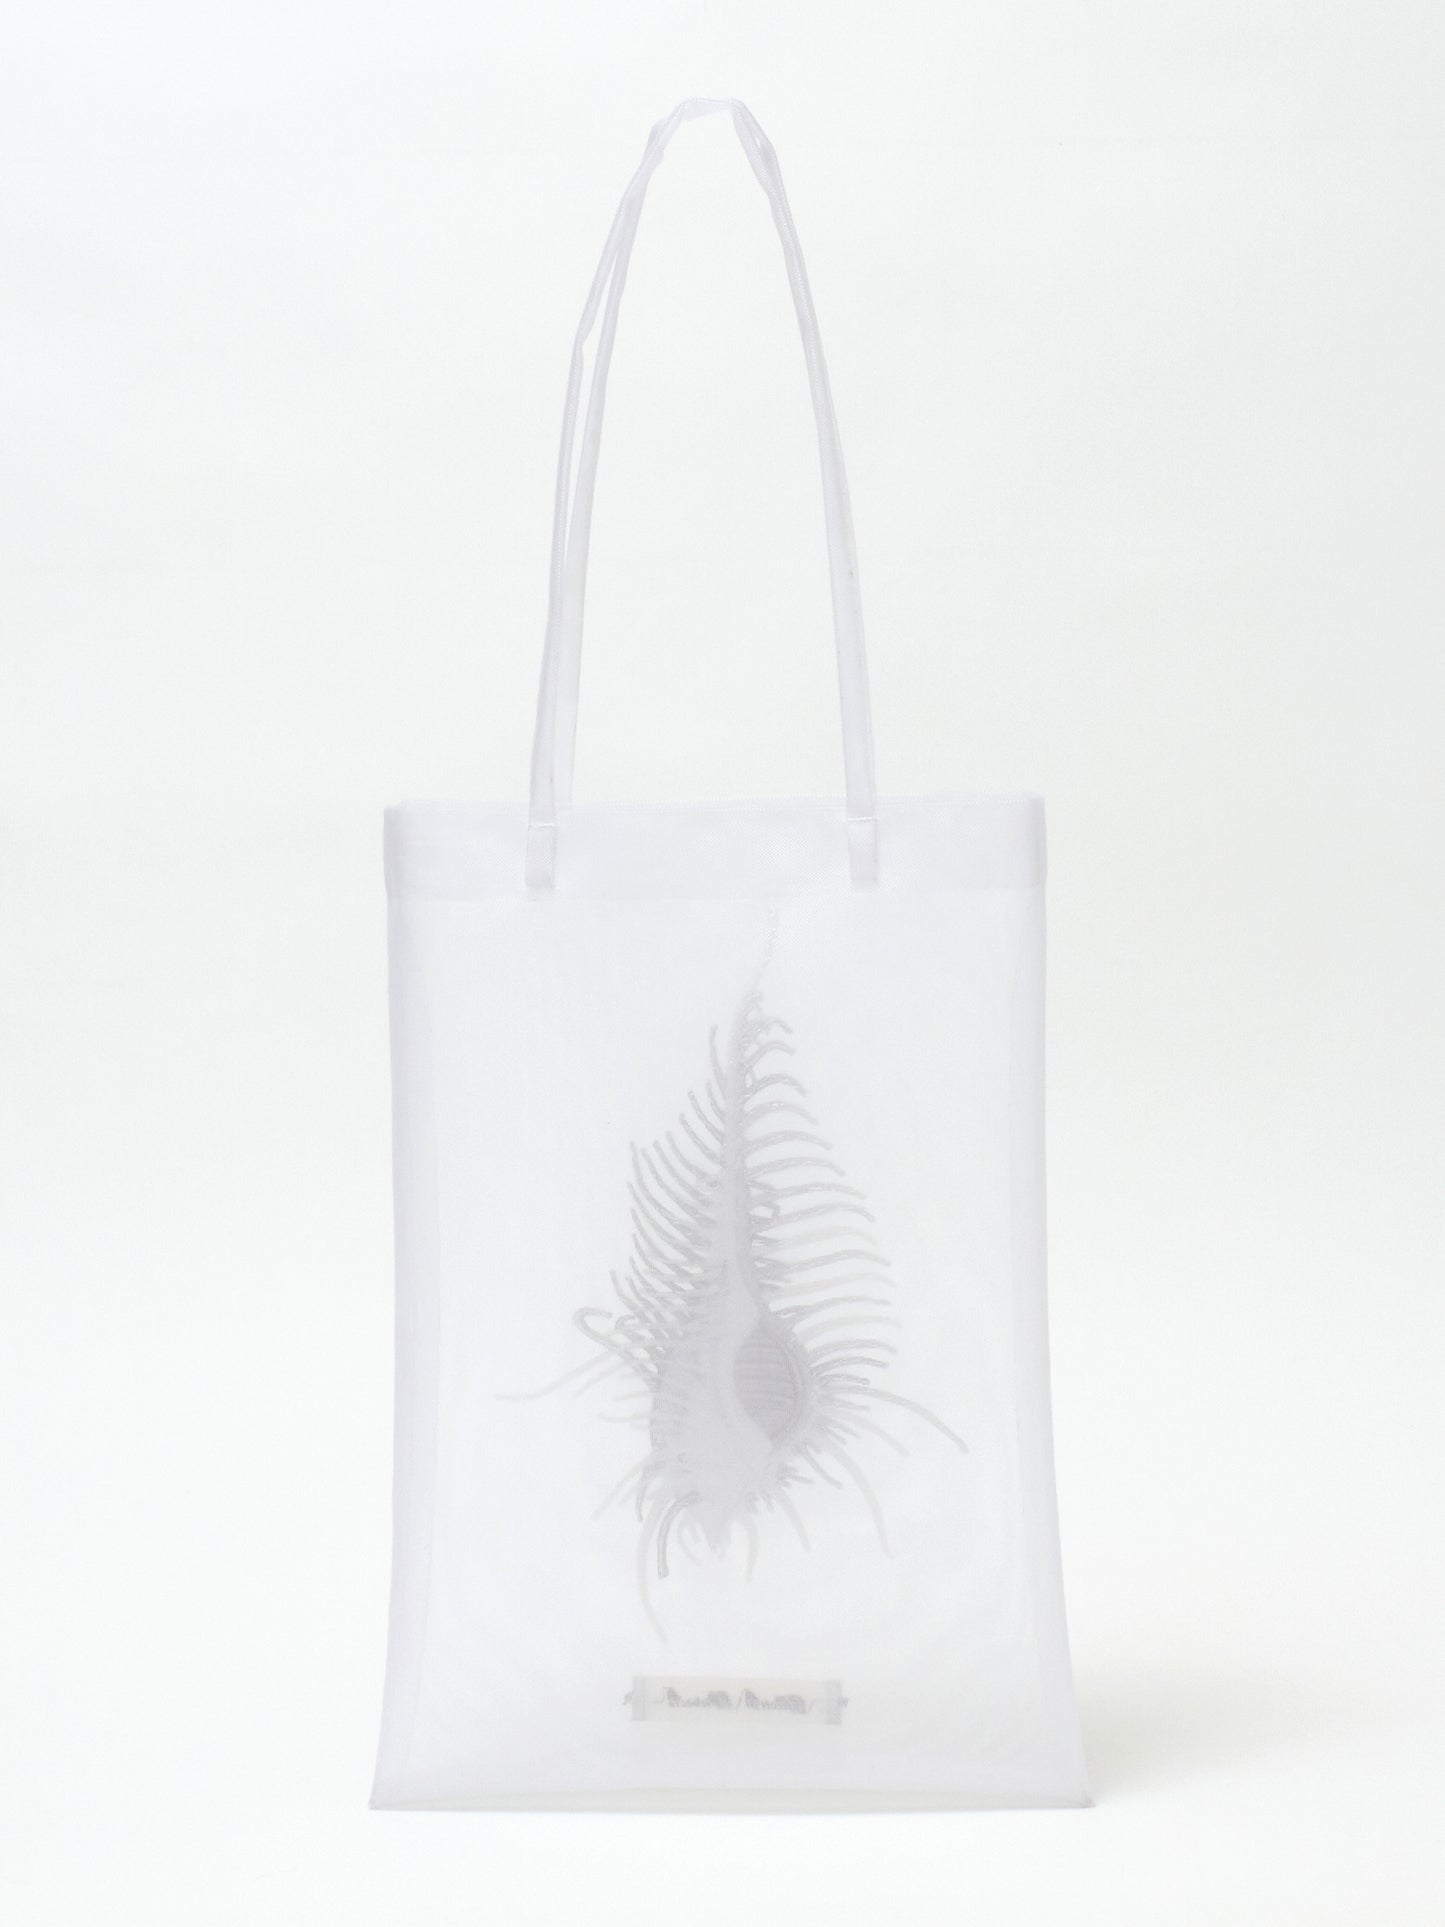 AKKIGAI Sheer bag【Delivery in December 2023】